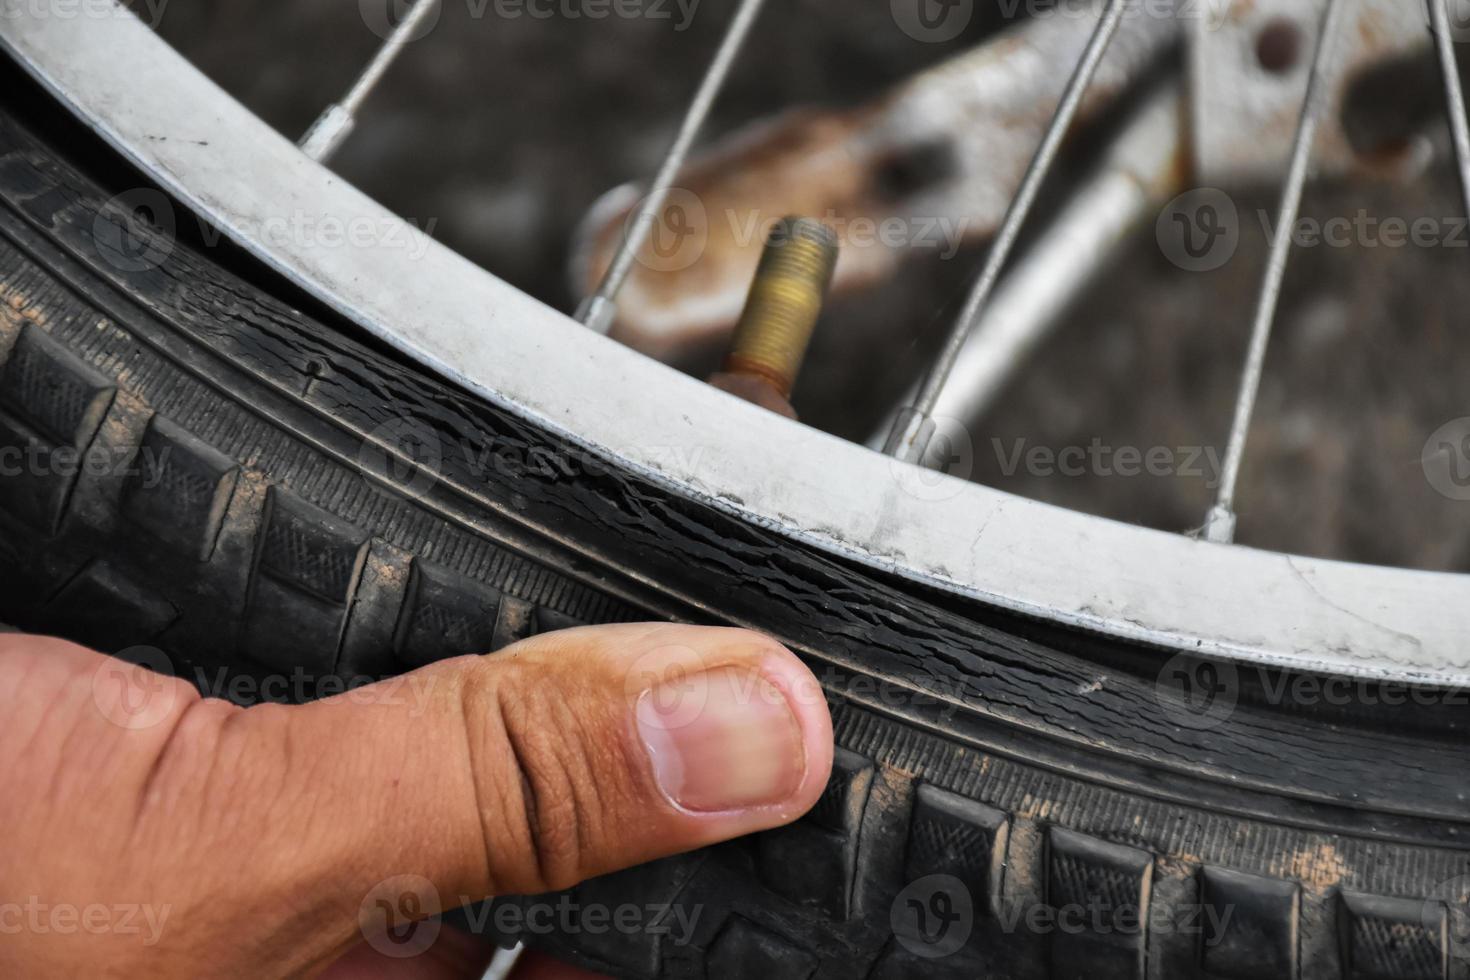 bicicletta pneumatico era piatto e parcheggiata su il marciapiede, il riparatore è controllo esso. morbido e selettivo messa a fuoco su pneumatico. foto